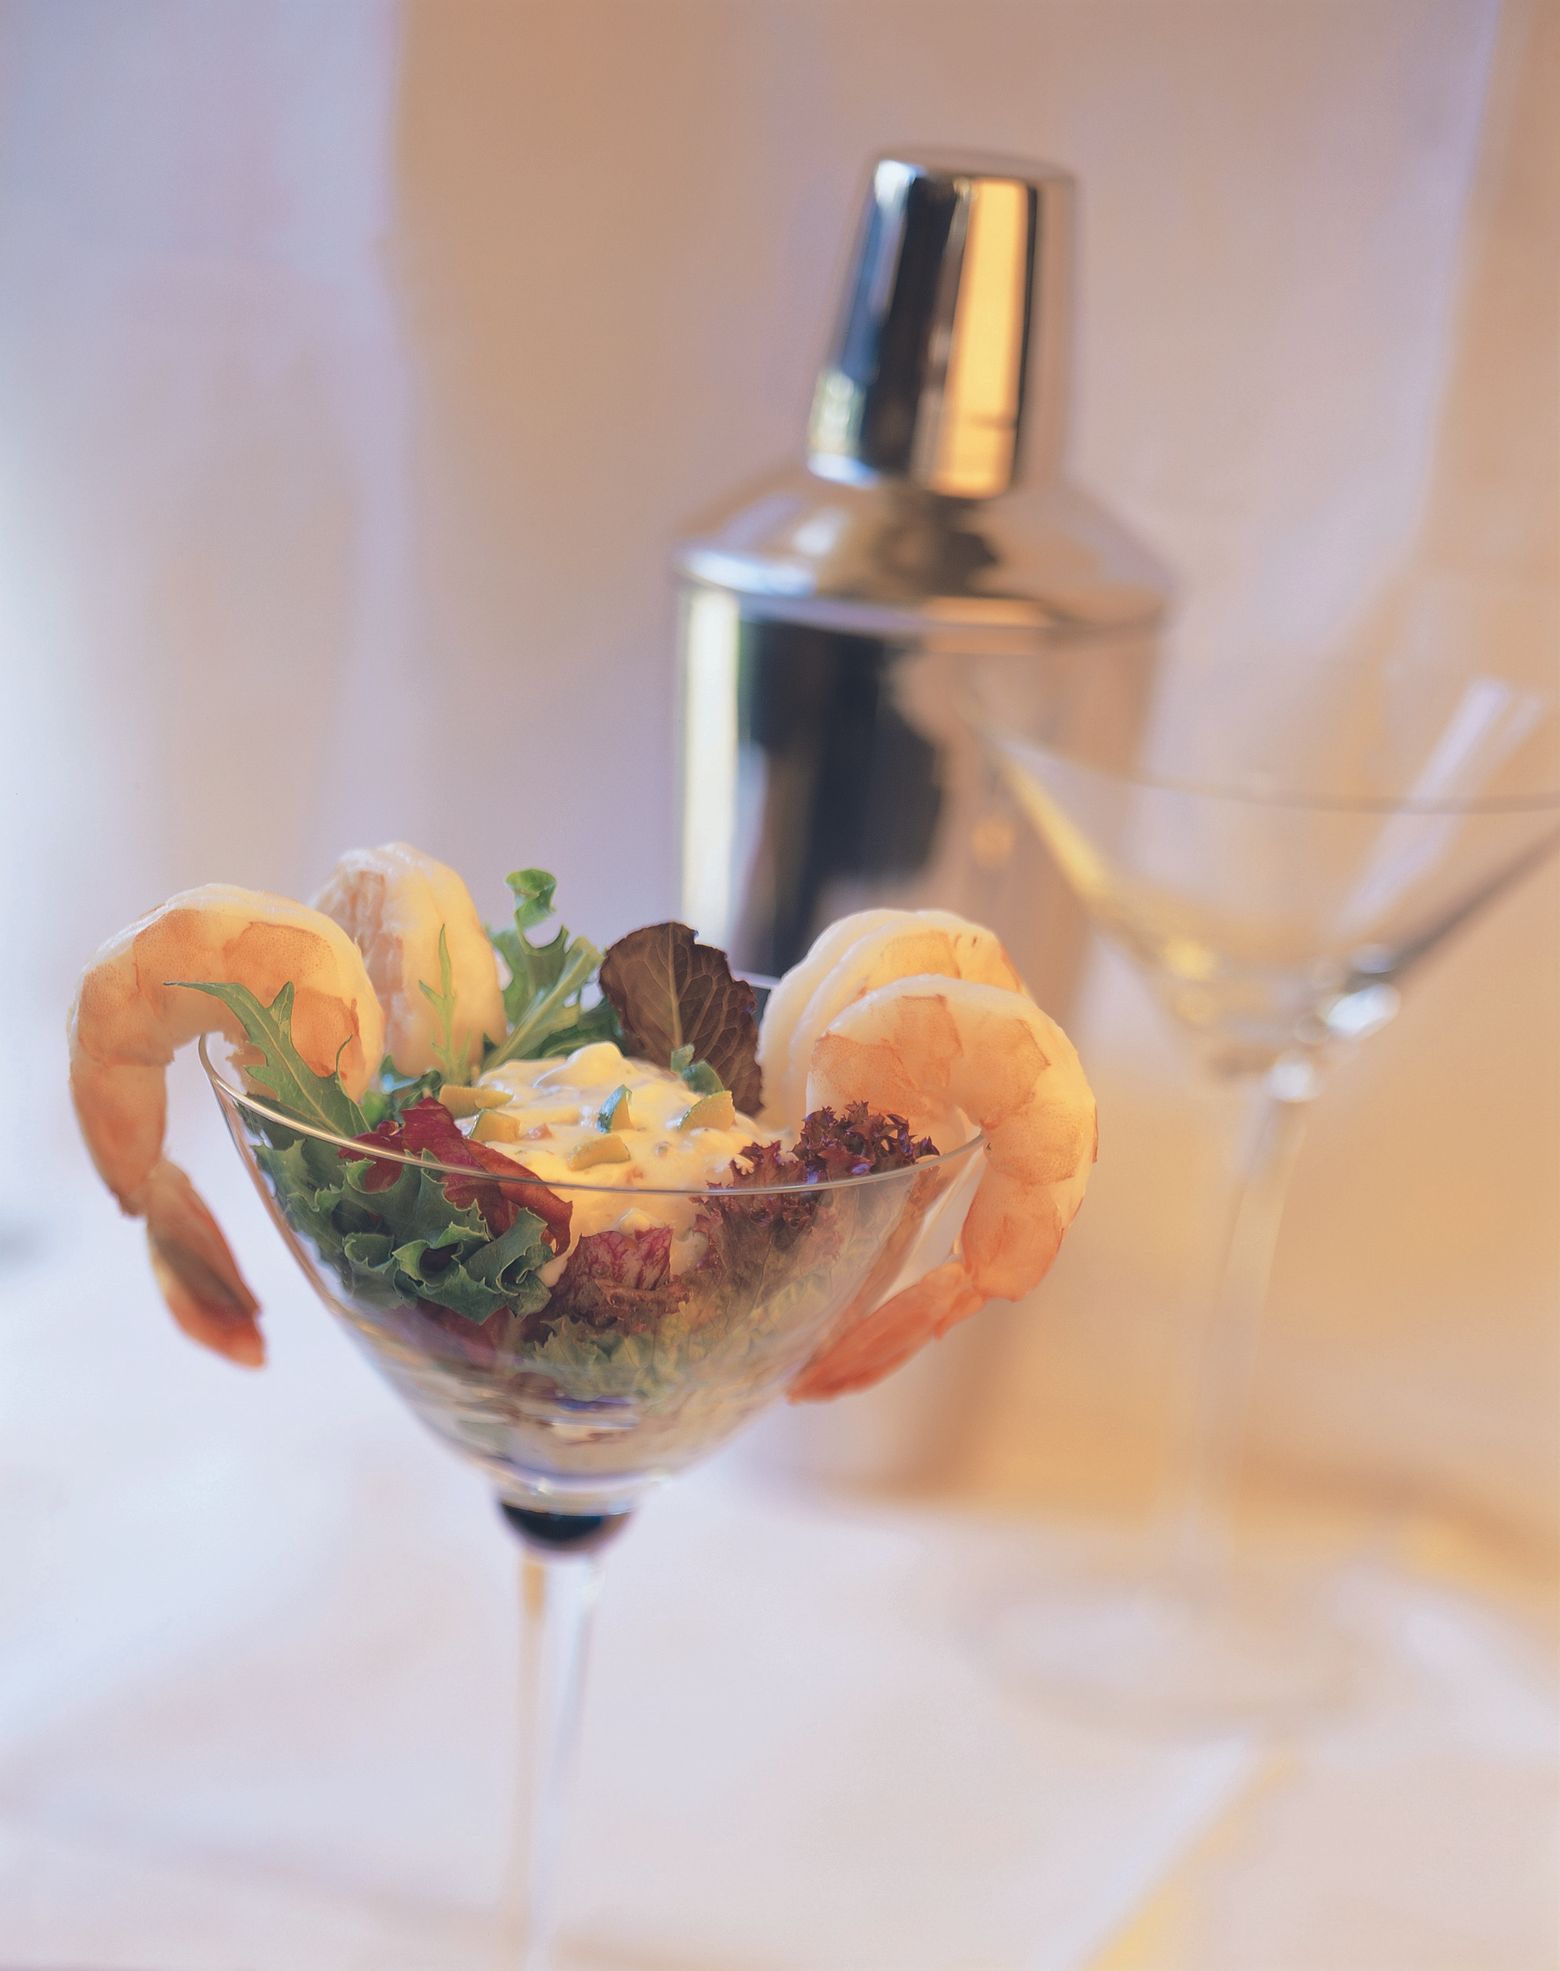 Classic Cuisine 20-Piece Glass Bowls with Lids Set